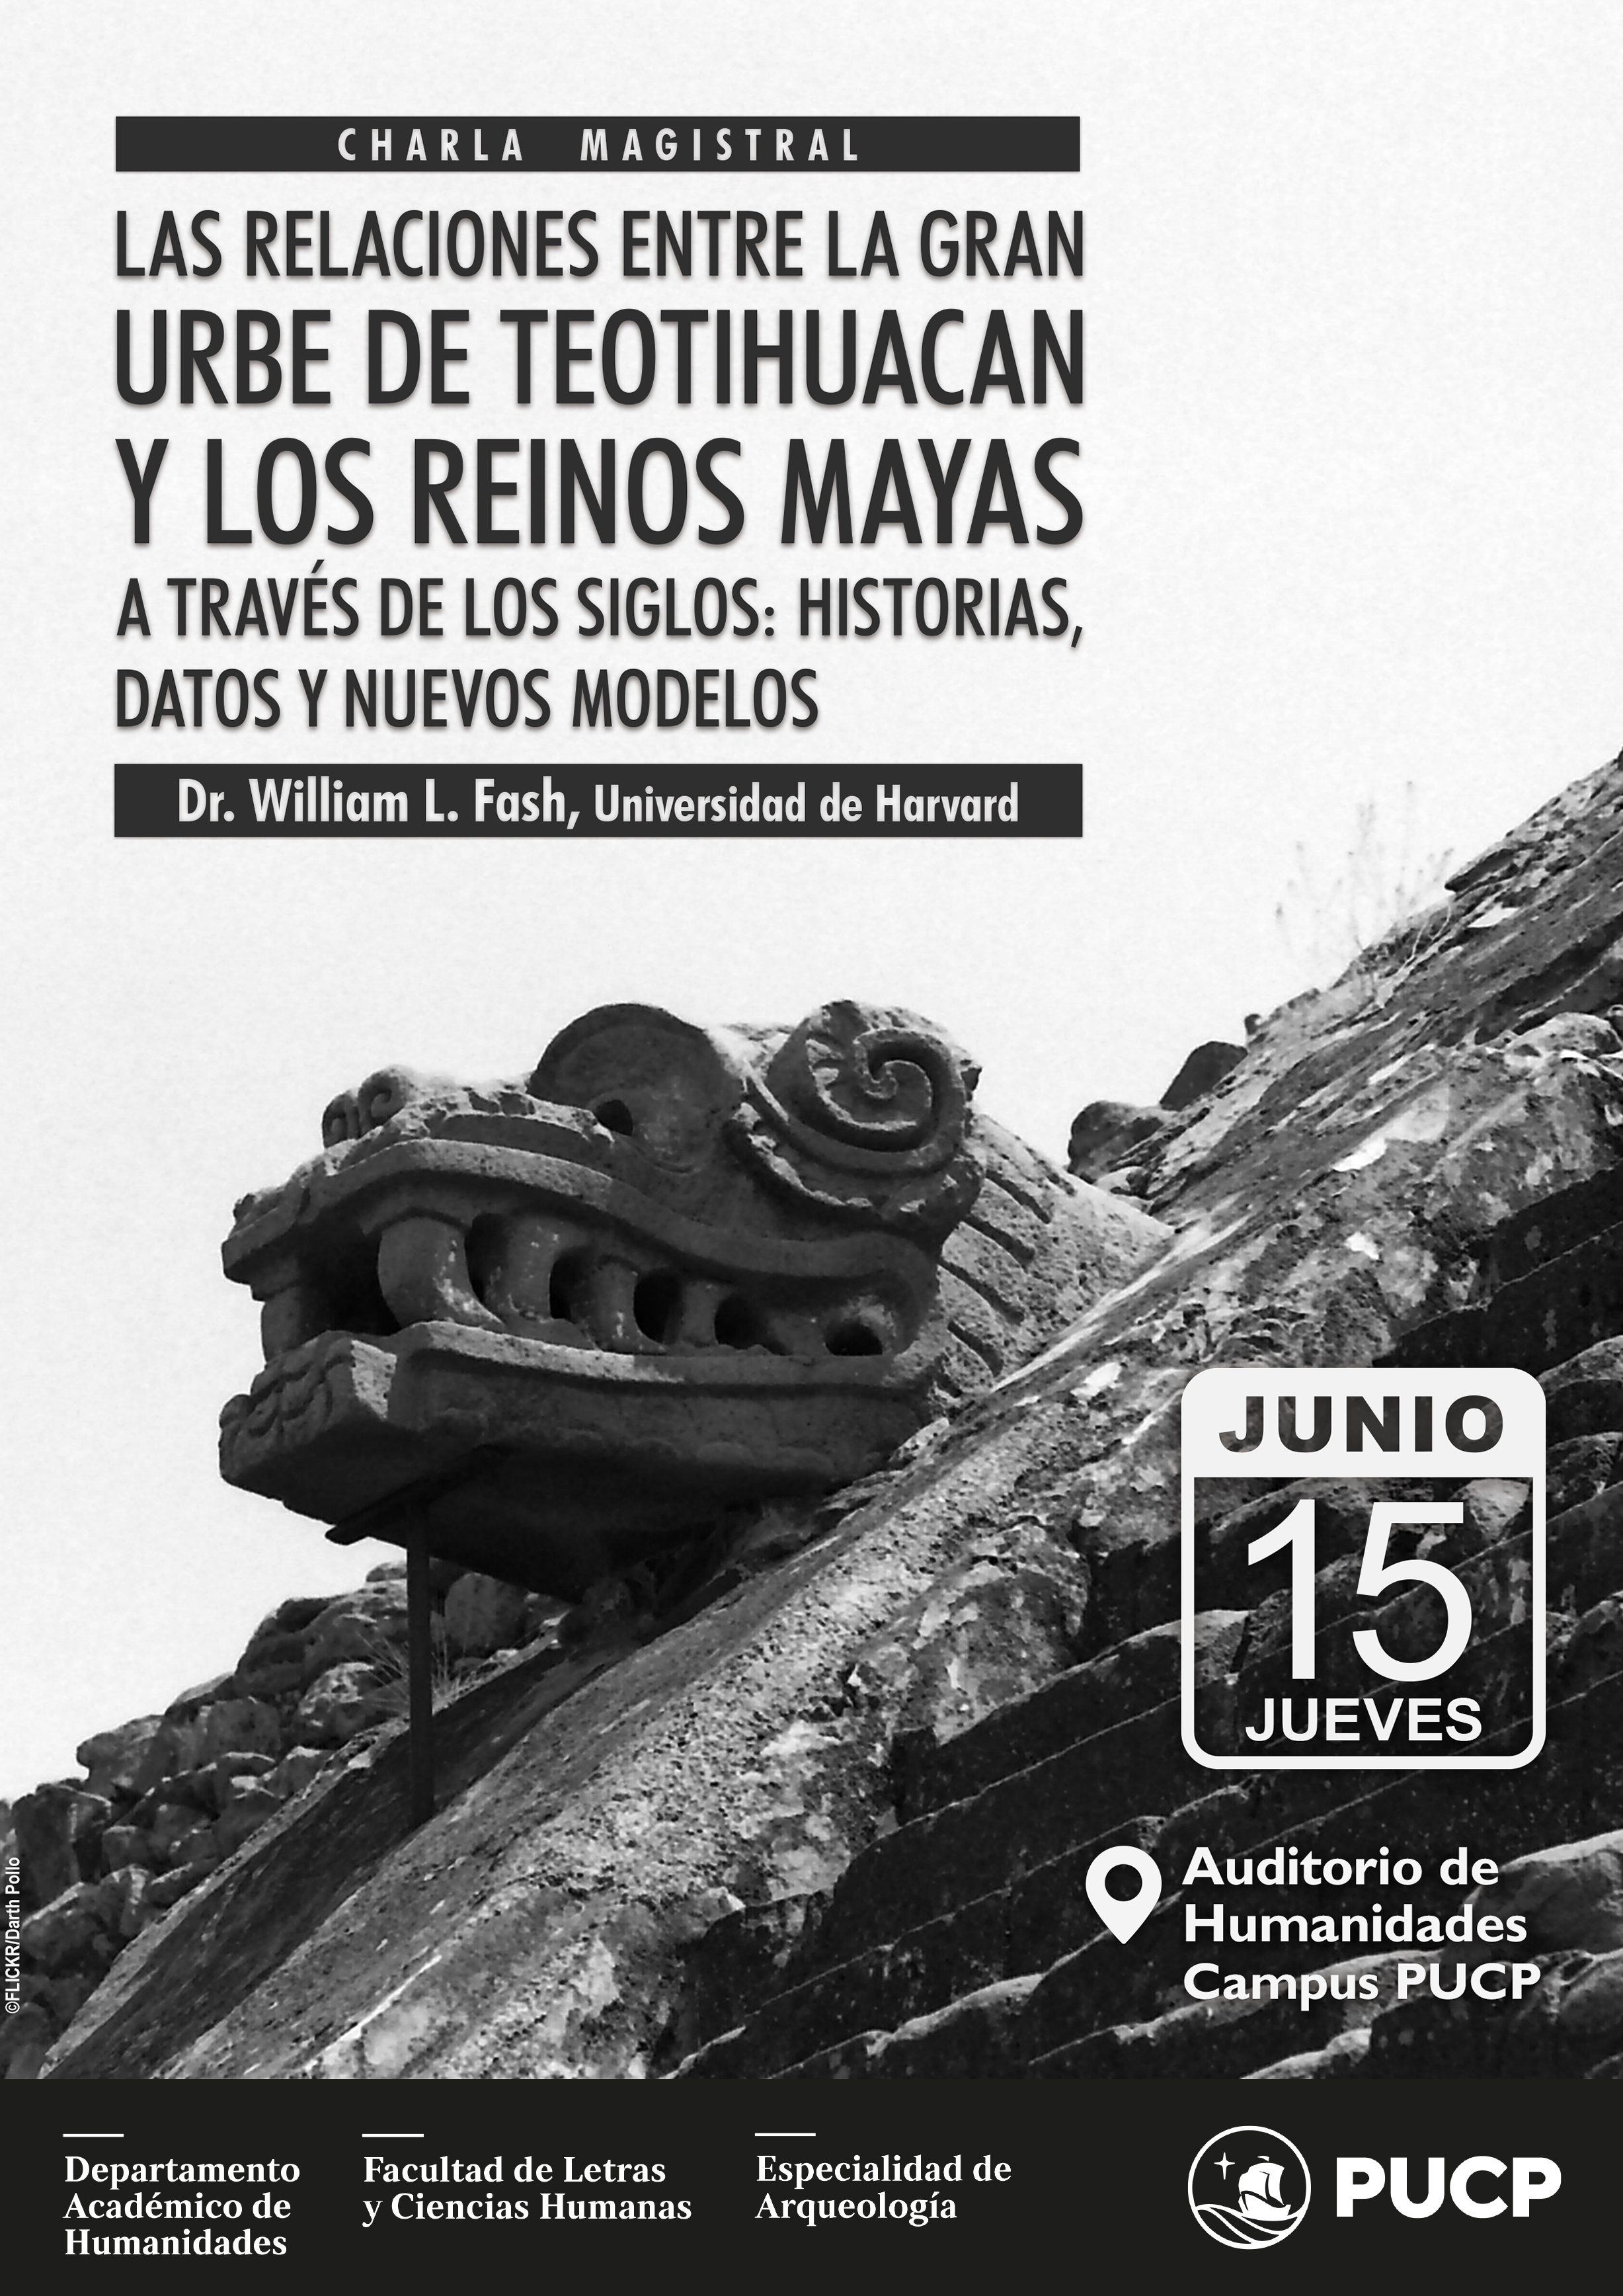 Charla magistral: “Las relaciones entre la gran urbe de Teotihuacan y los reinos Mayas a través de los siglos: Historias, datos, y modelos nuevos” [video]